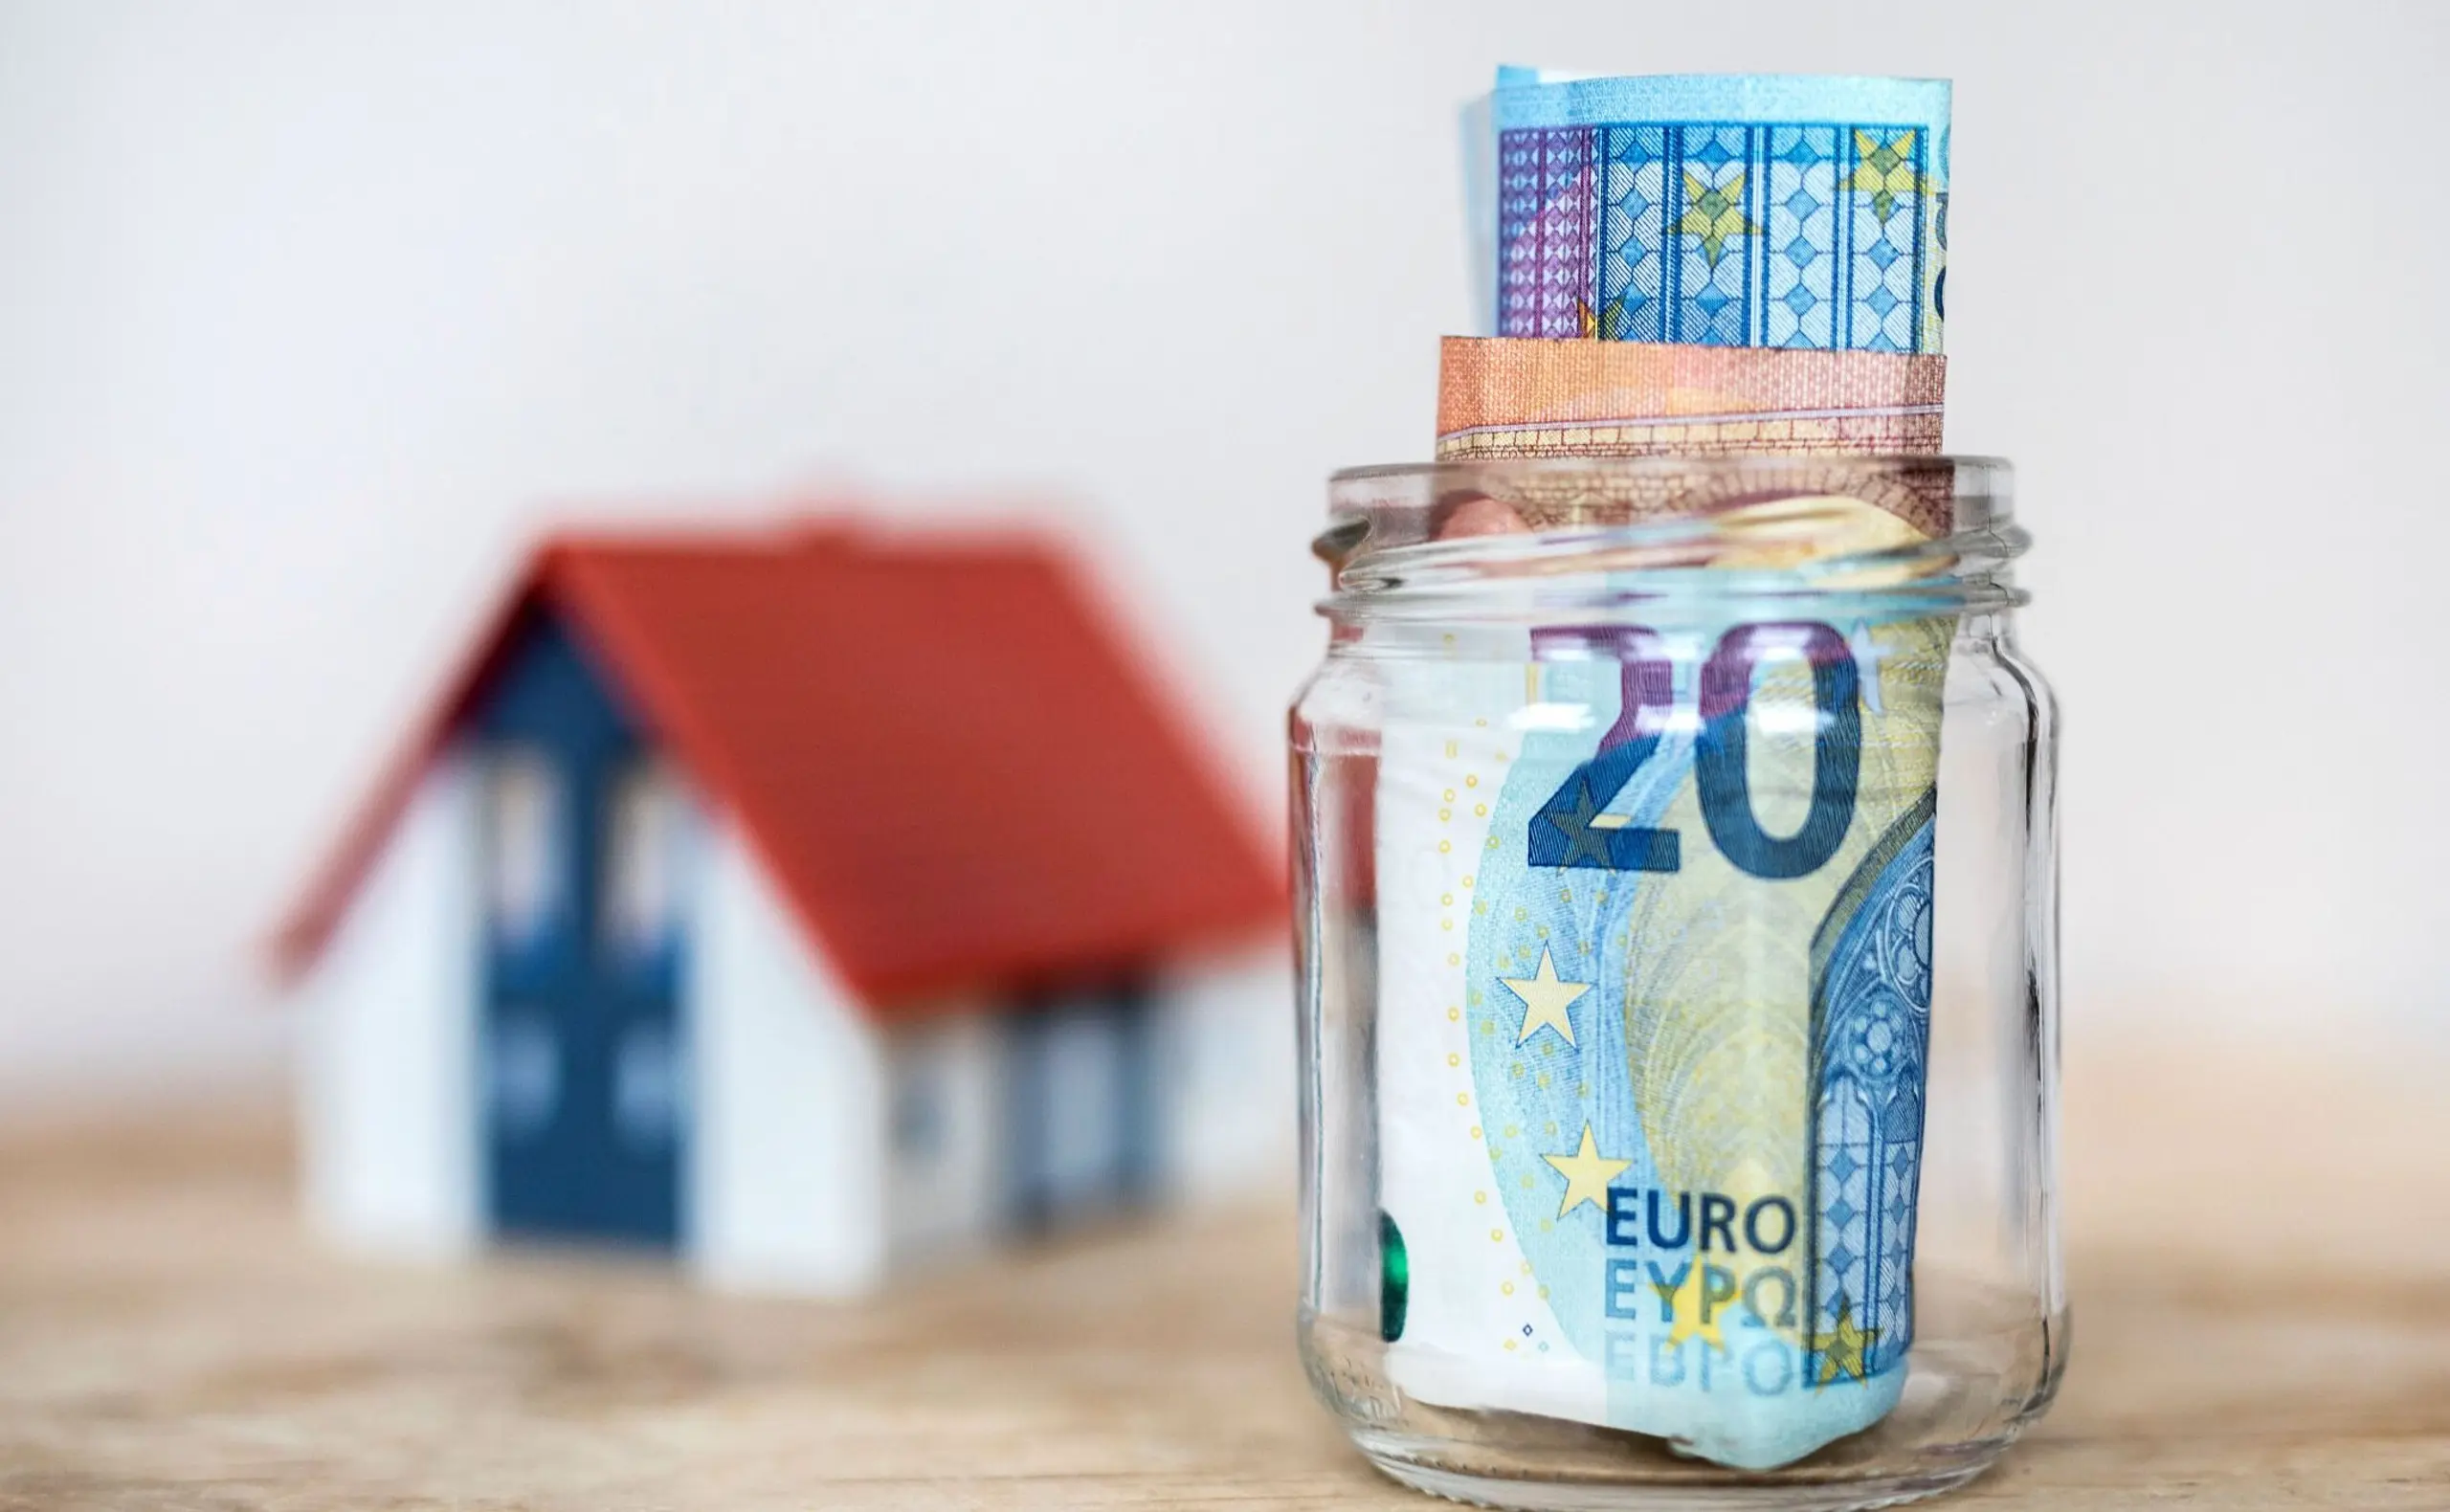 Immobilienfinanzierung: Die Vergaberichtlinien für Kredite sollen wieder gelockert werden.